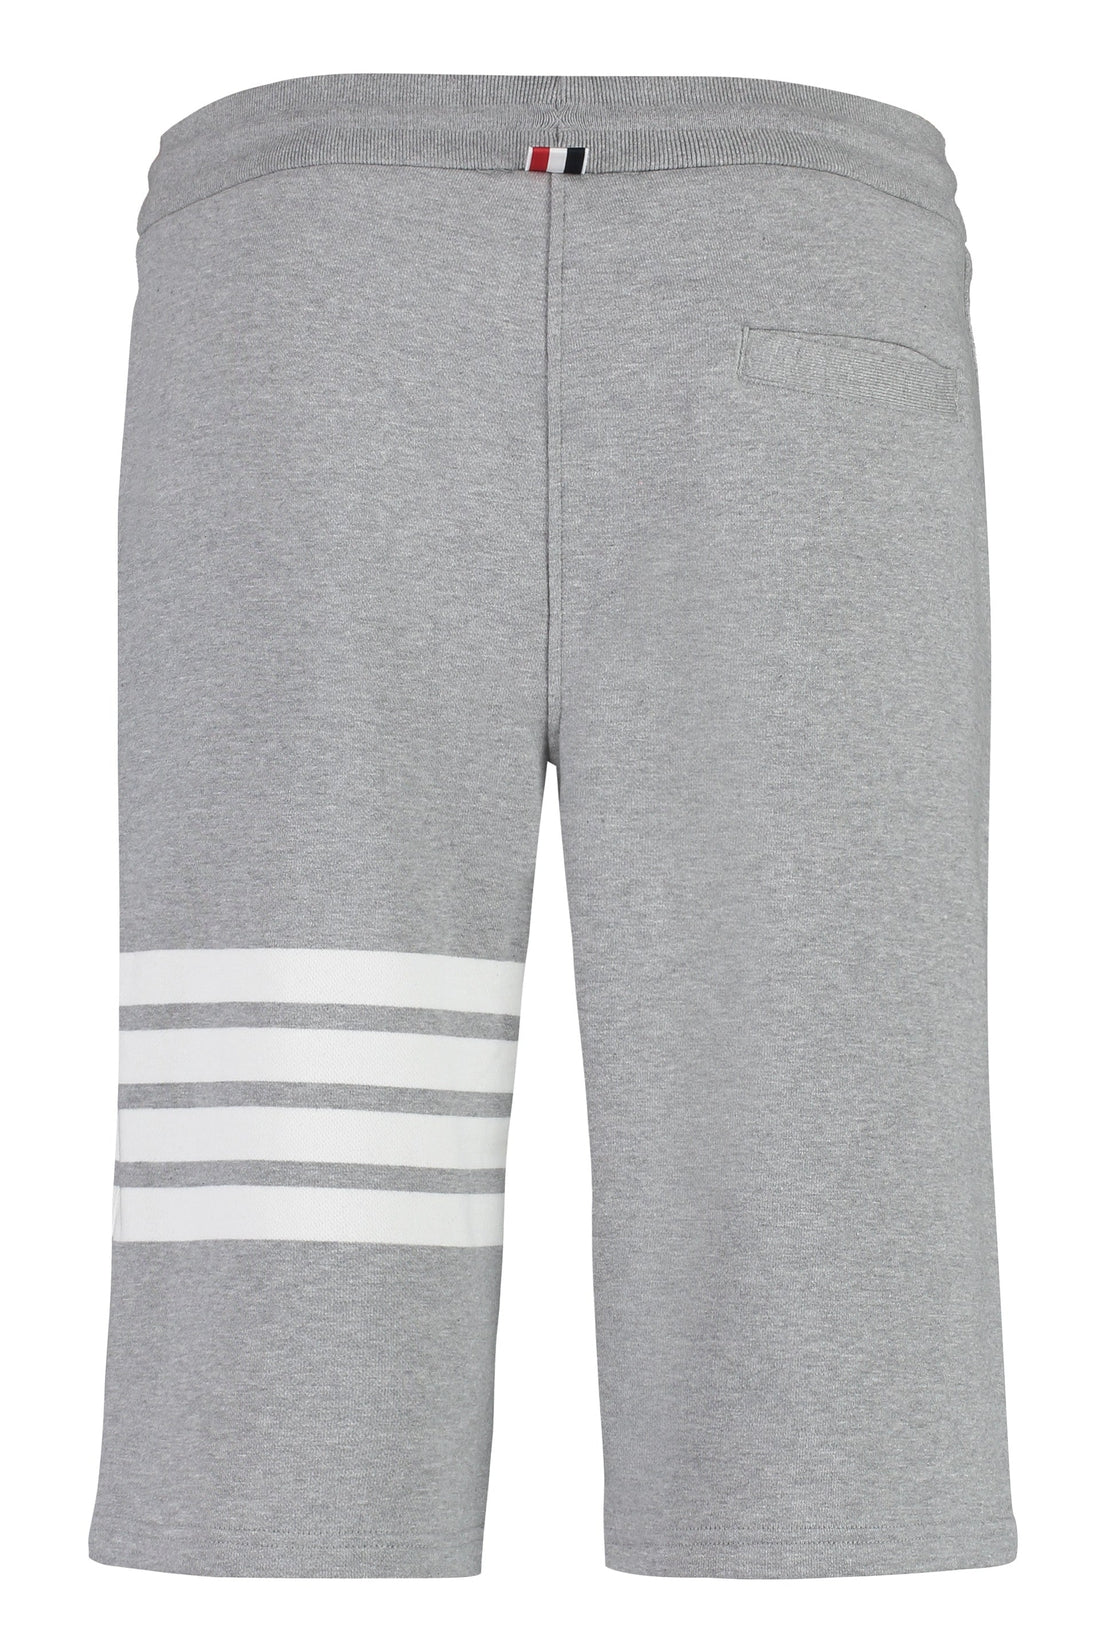 Thom Browne-OUTLET-SALE-Cotton shorts-ARCHIVIST